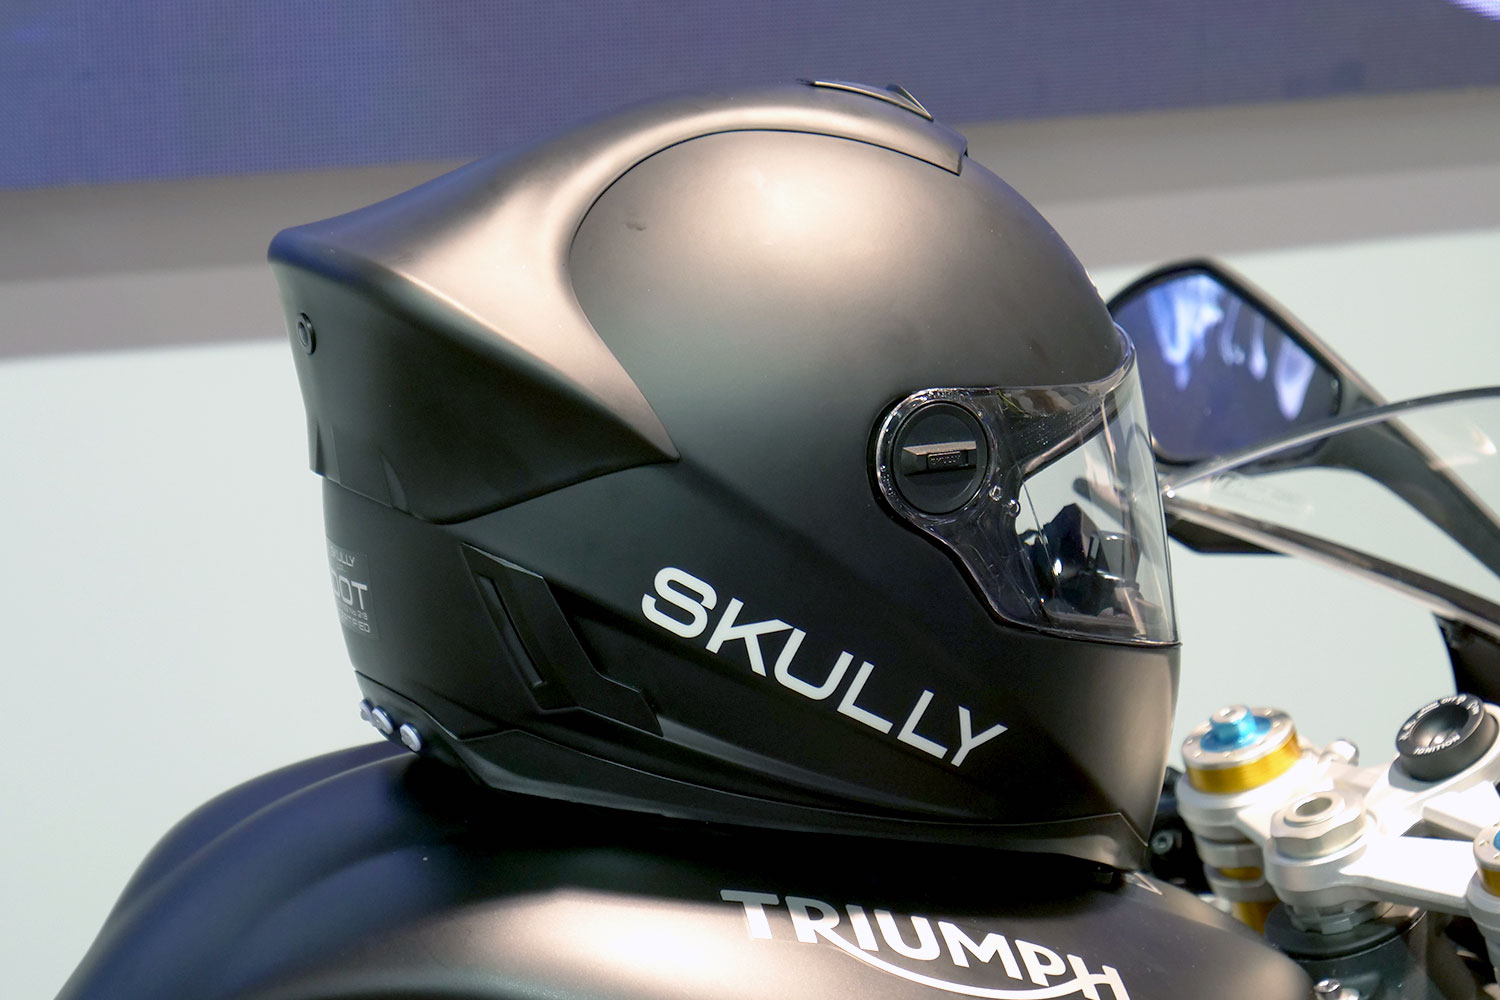 skully motorcycle helmet right